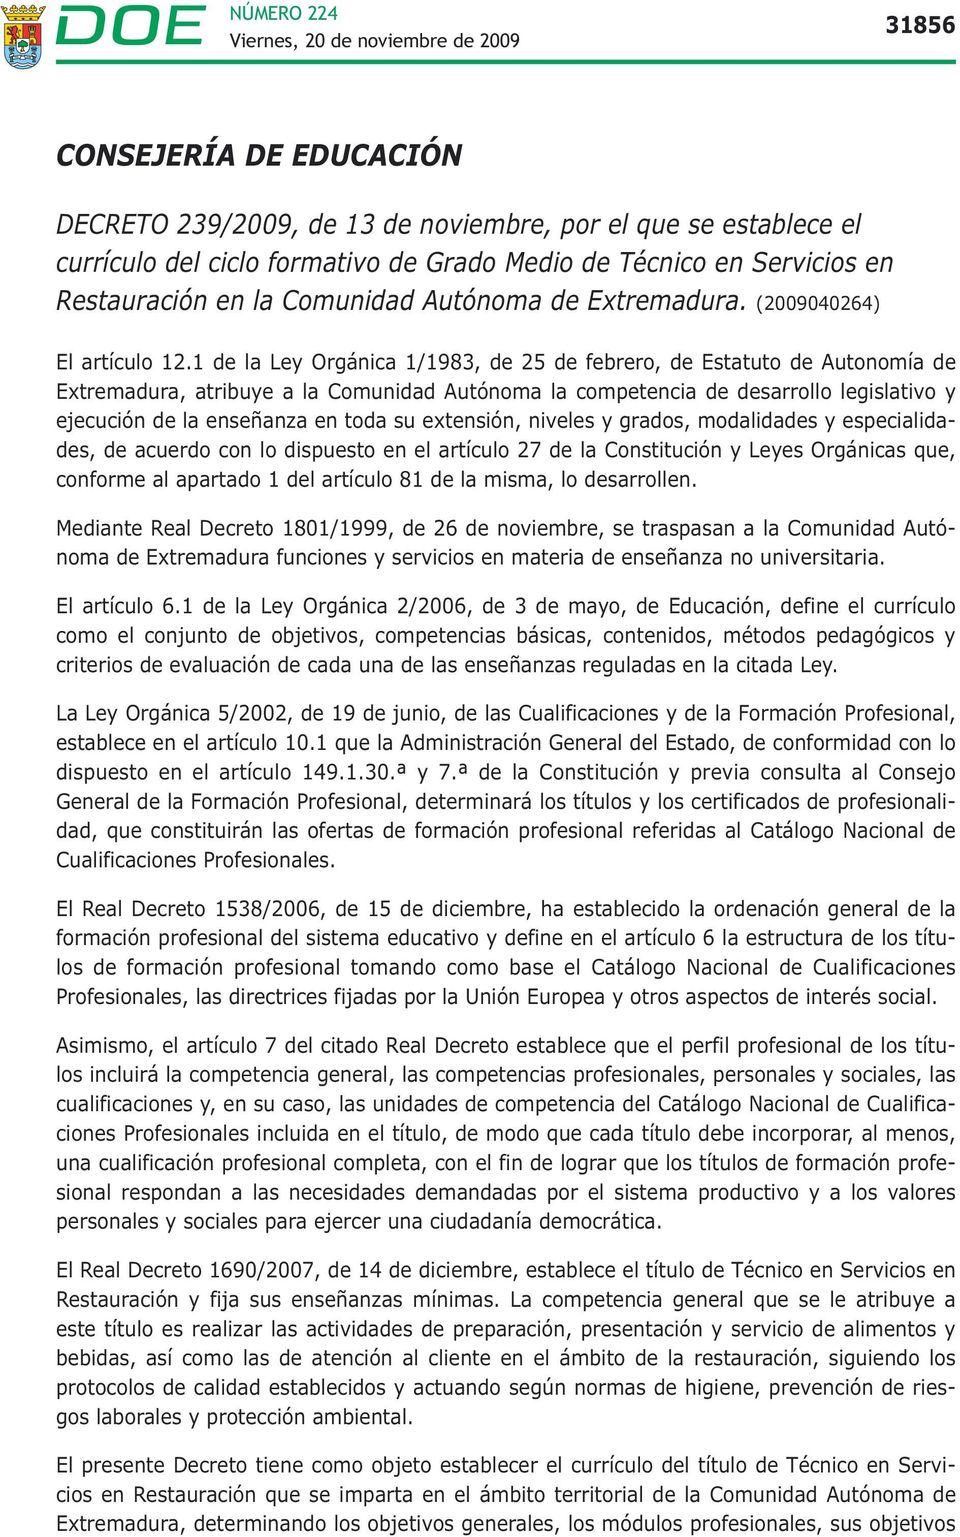 1 de la Ley Orgánica 1/1983, de 25 de febrero, de Estatuto de Autonomía de Extremadura, atribuye a la Comunidad Autónoma la competencia de desarrollo legislativo y ejecución de la enseñanza en toda